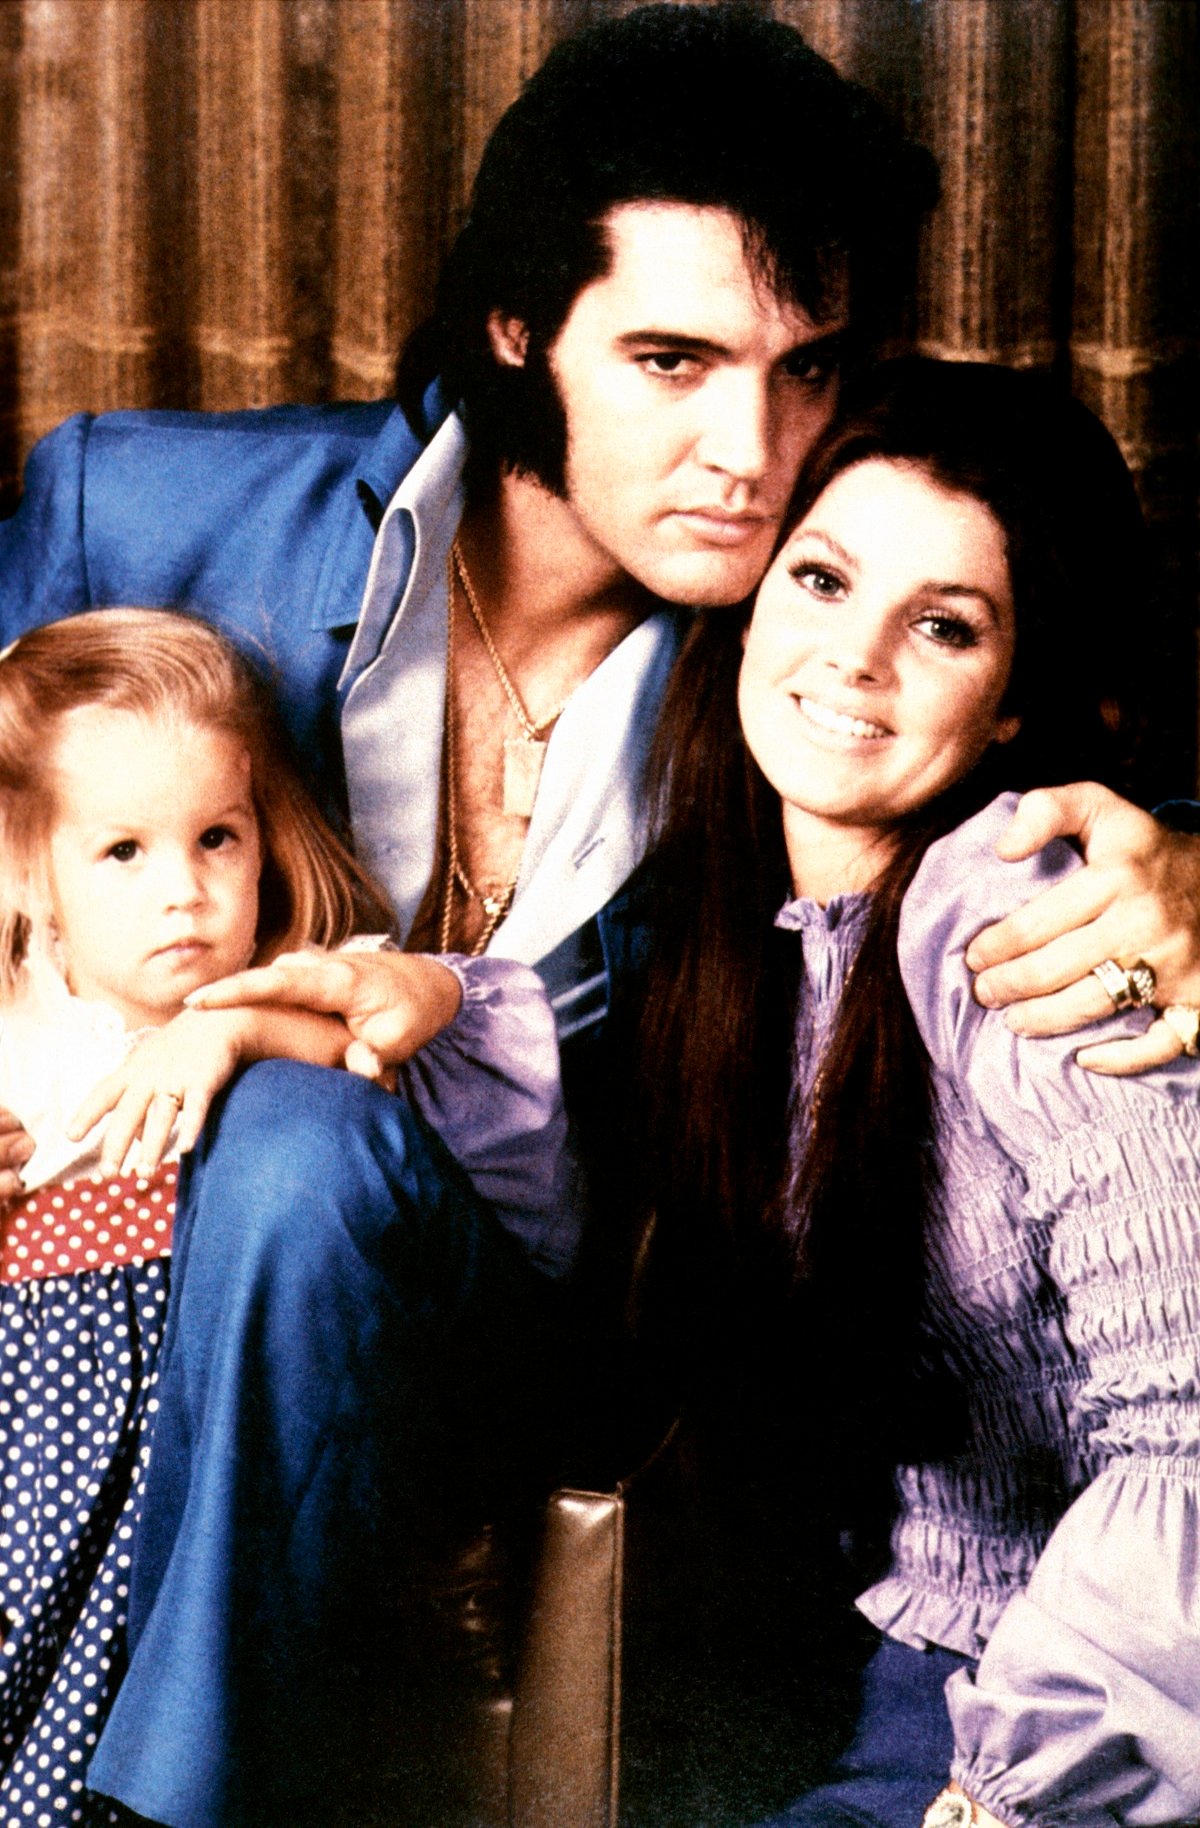 Lisa Marie Presley, Elvis Presley, and Priscilla Presley